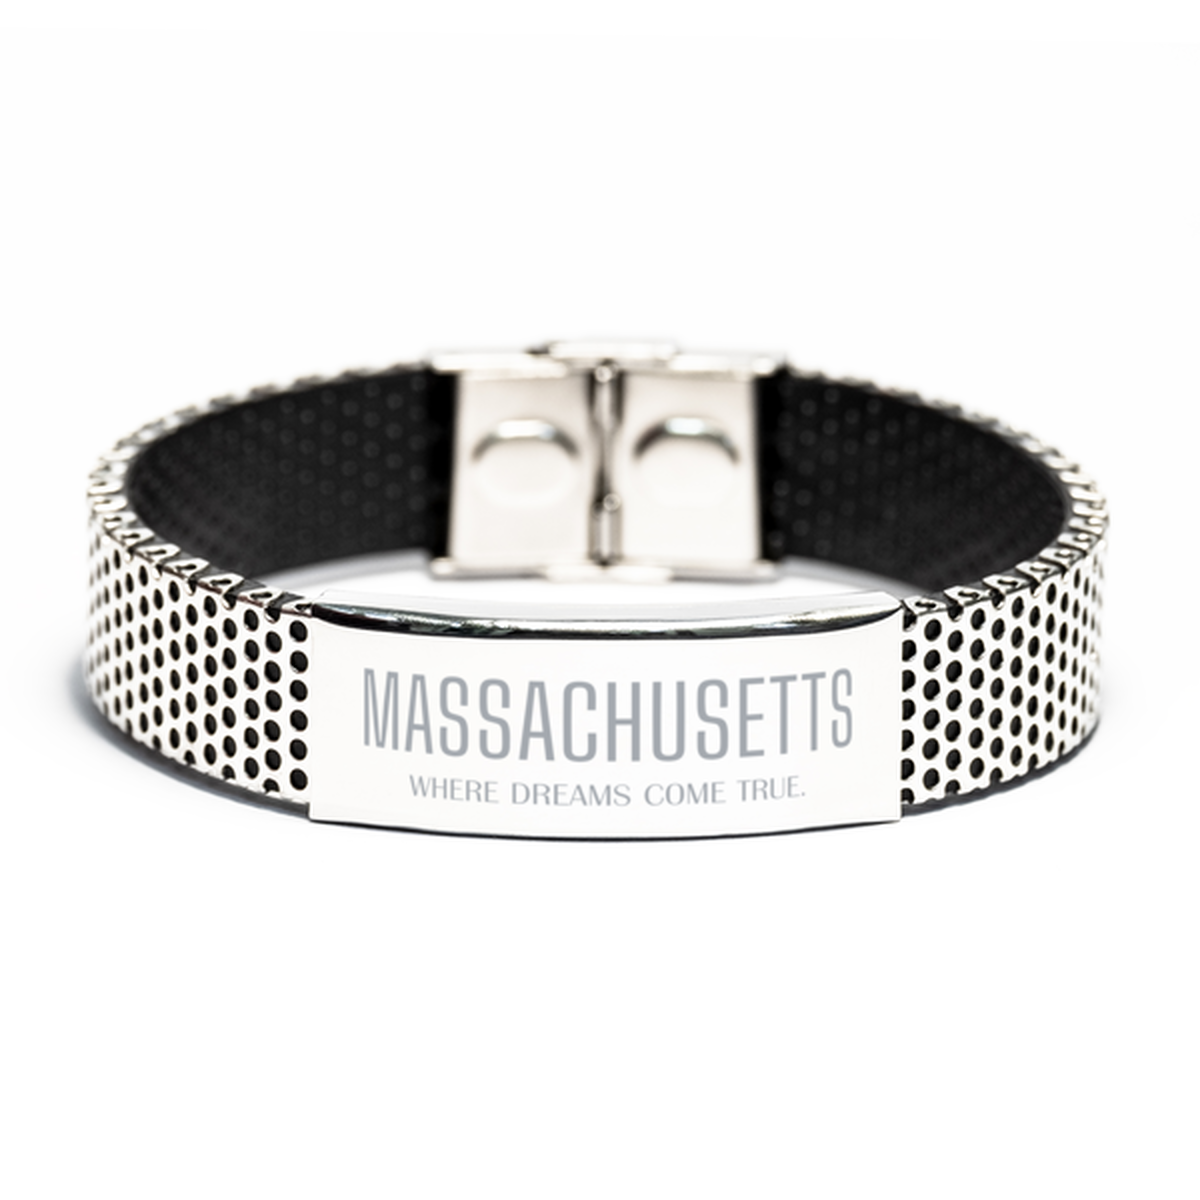 Love Massachusetts State Stainless Steel Bracelet, Massachusetts Where dreams come true, Birthday Inspirational Gifts For Massachusetts Men, Women, Friends